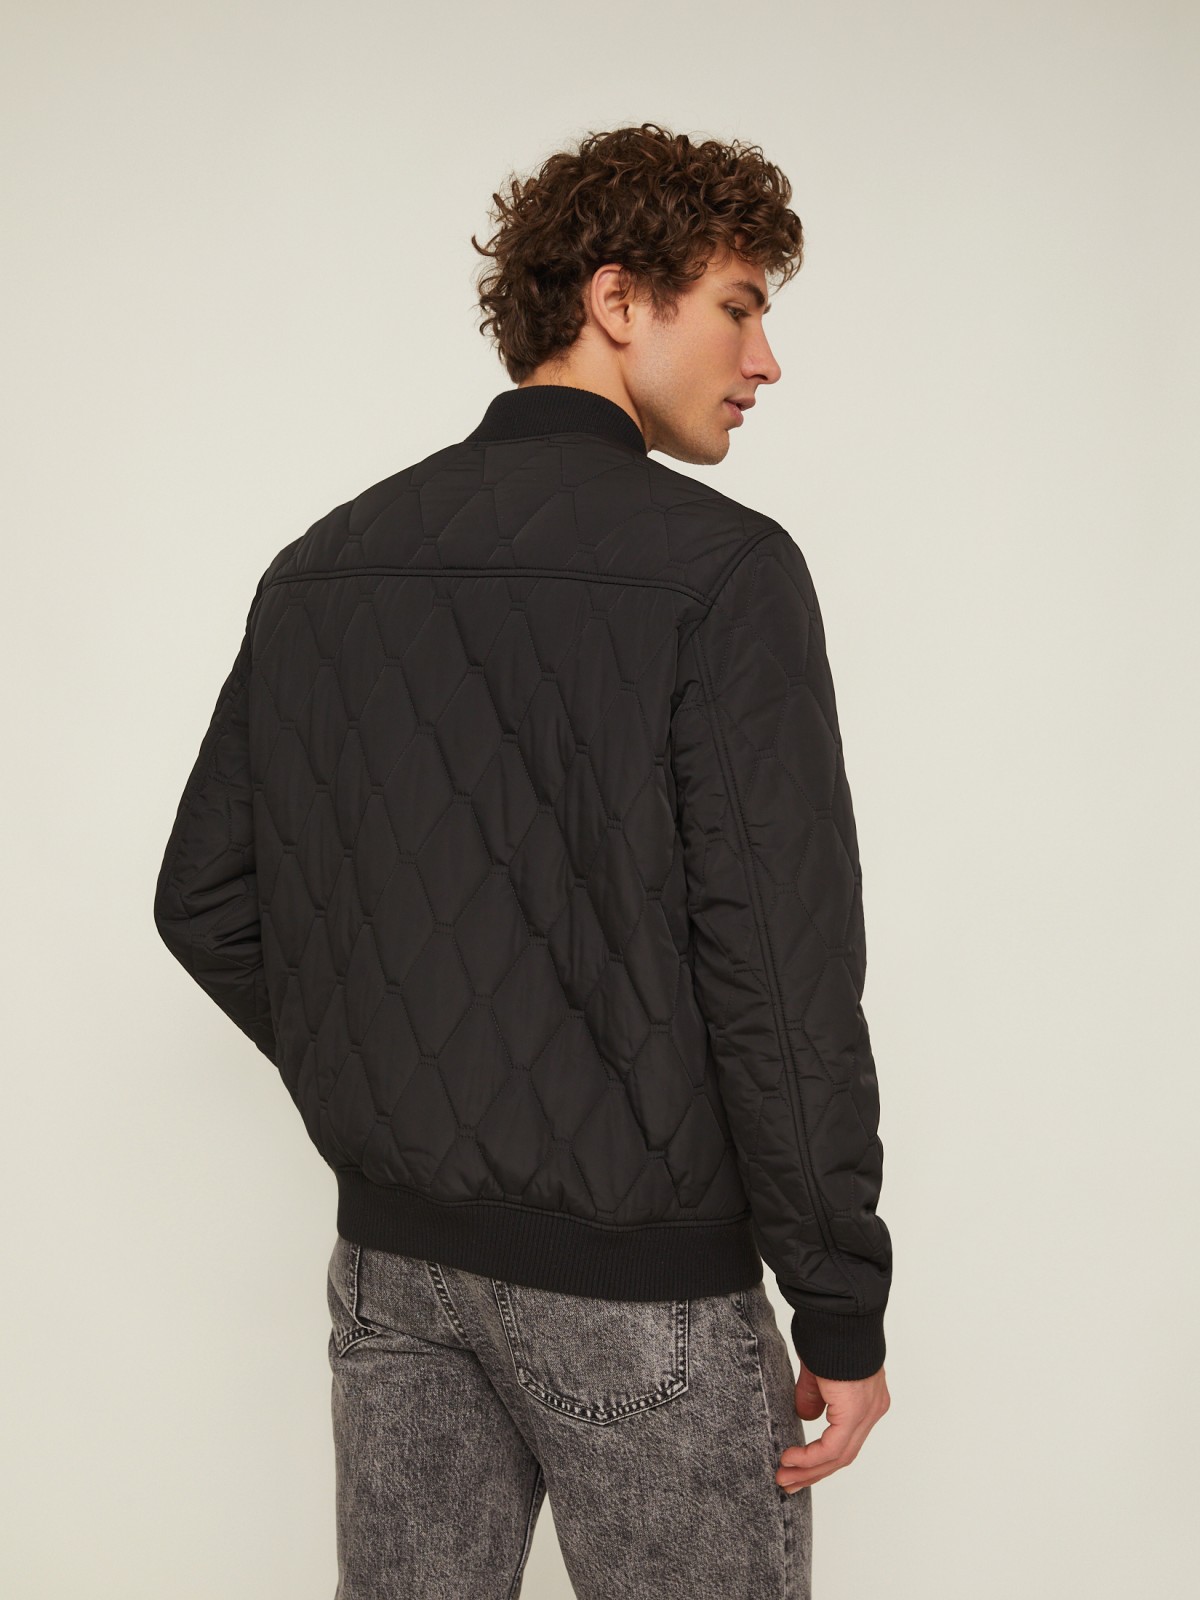 Утеплённая стёганая куртка-бомбер с воротником-стойкой zolla 014135139064, цвет черный, размер M - фото 6